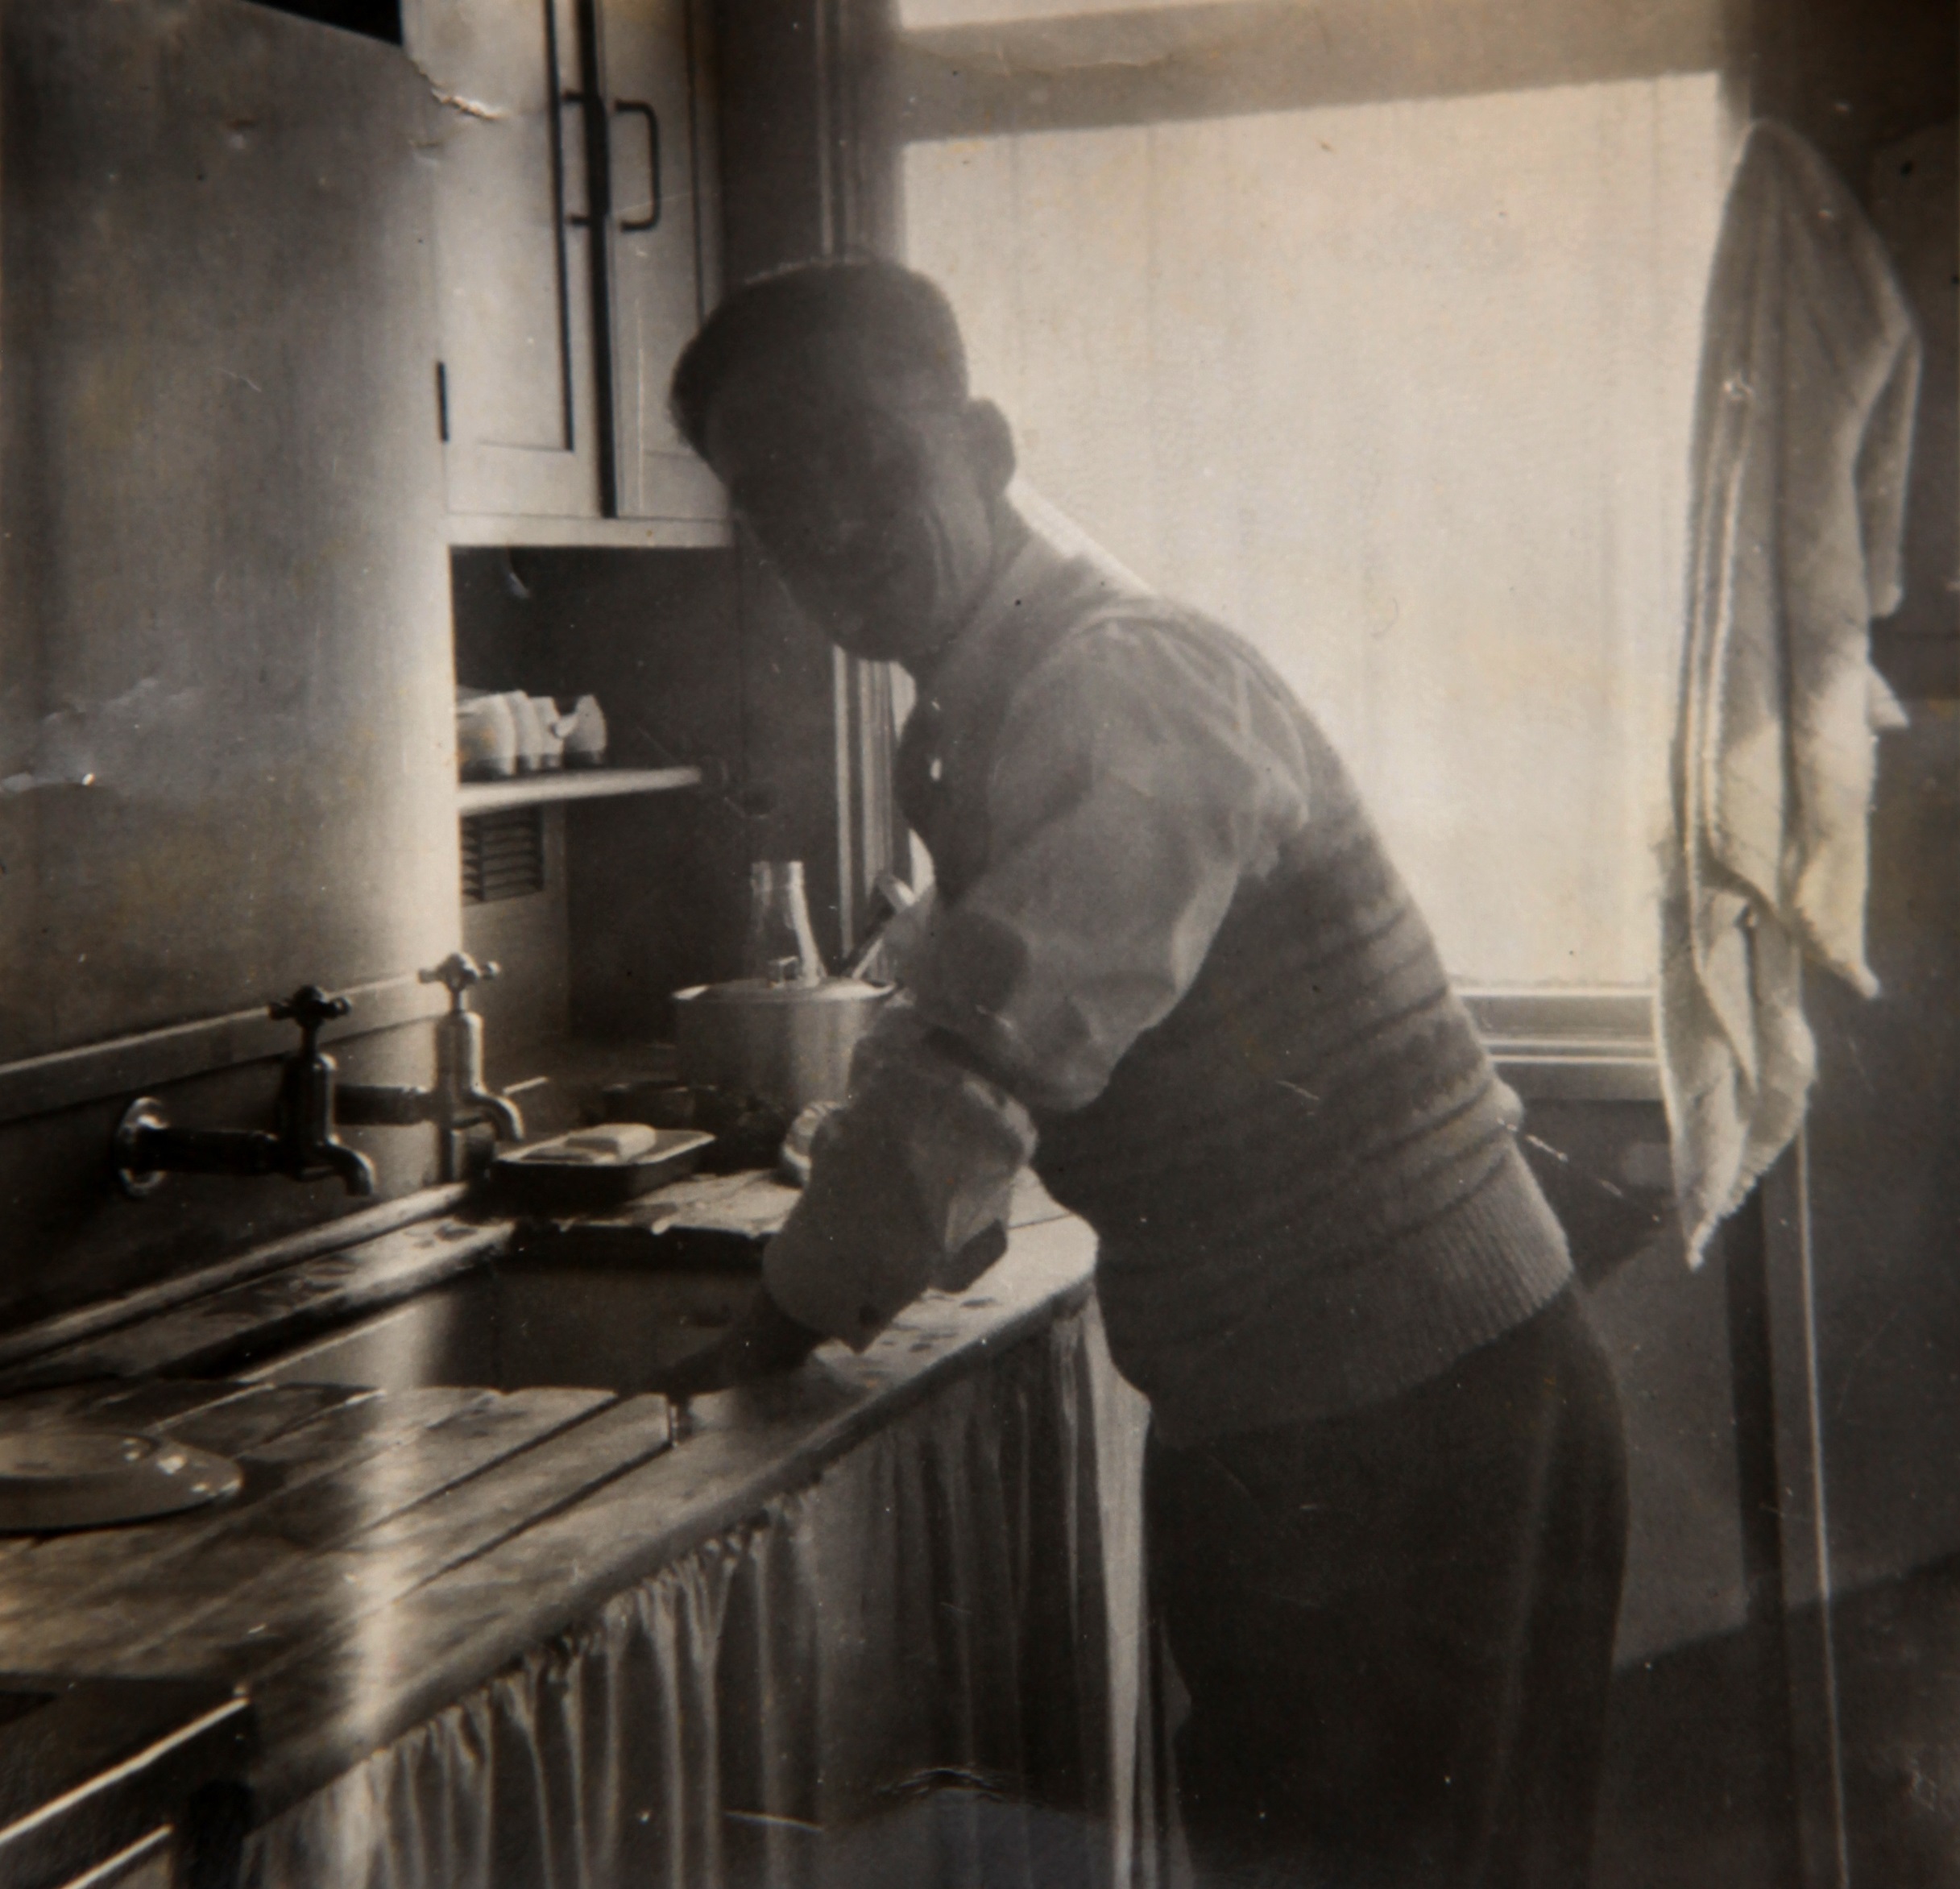 Dad washing up in prefab kitchen. Bolsover, Derbyshire